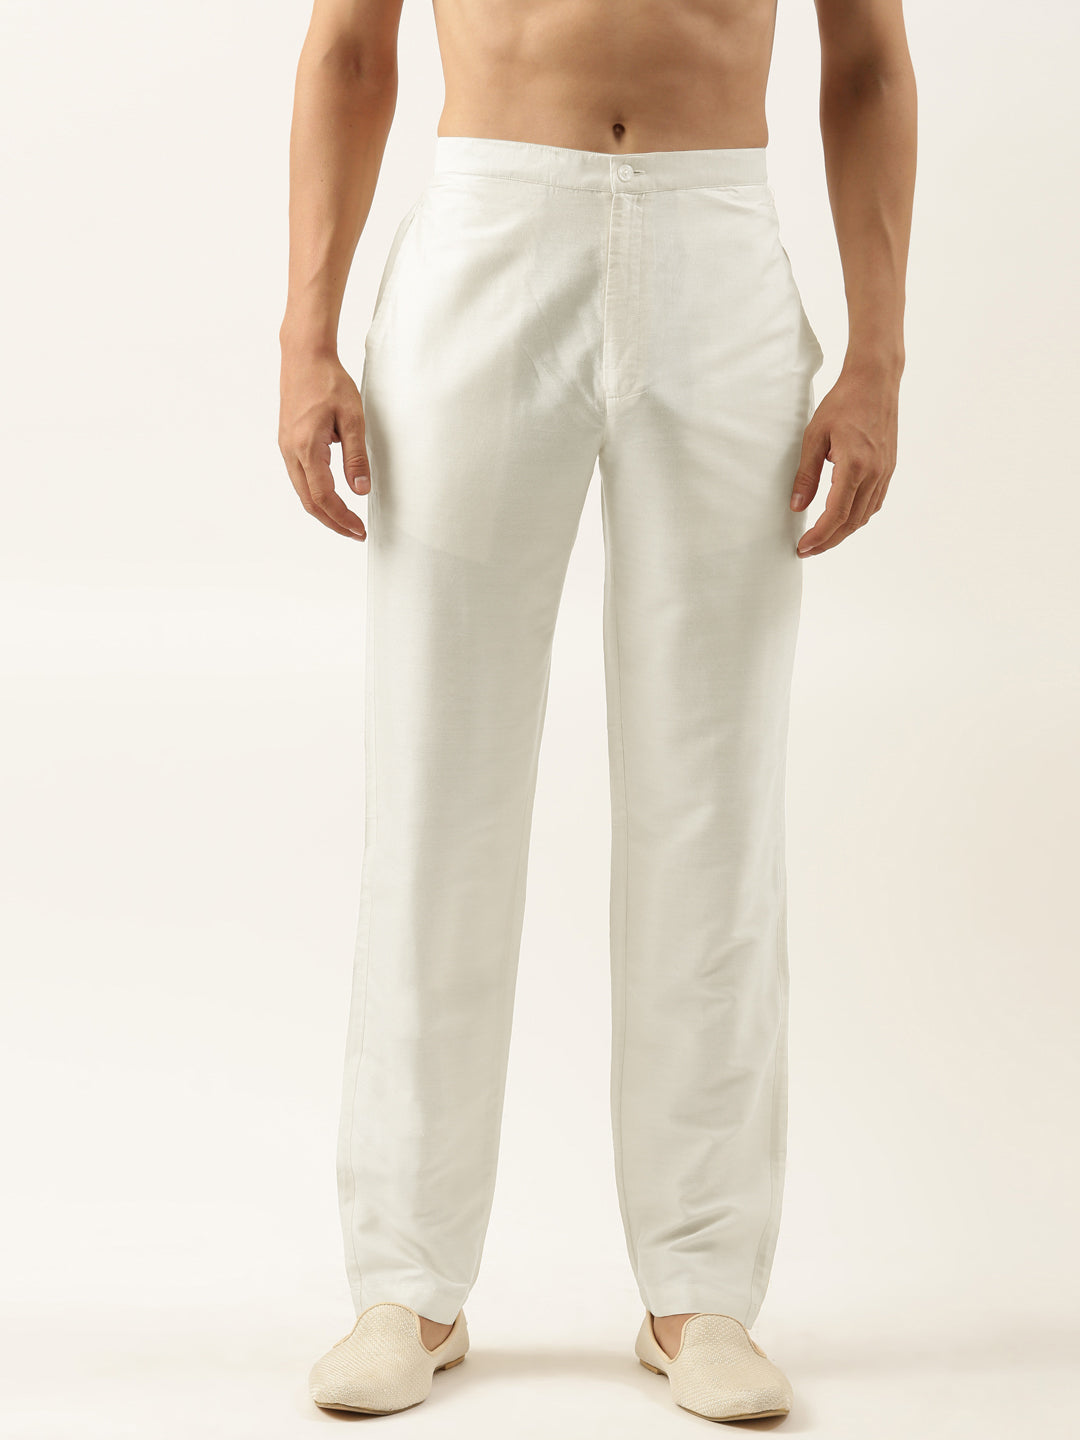 Off White Cotton Silk Pant Pajama